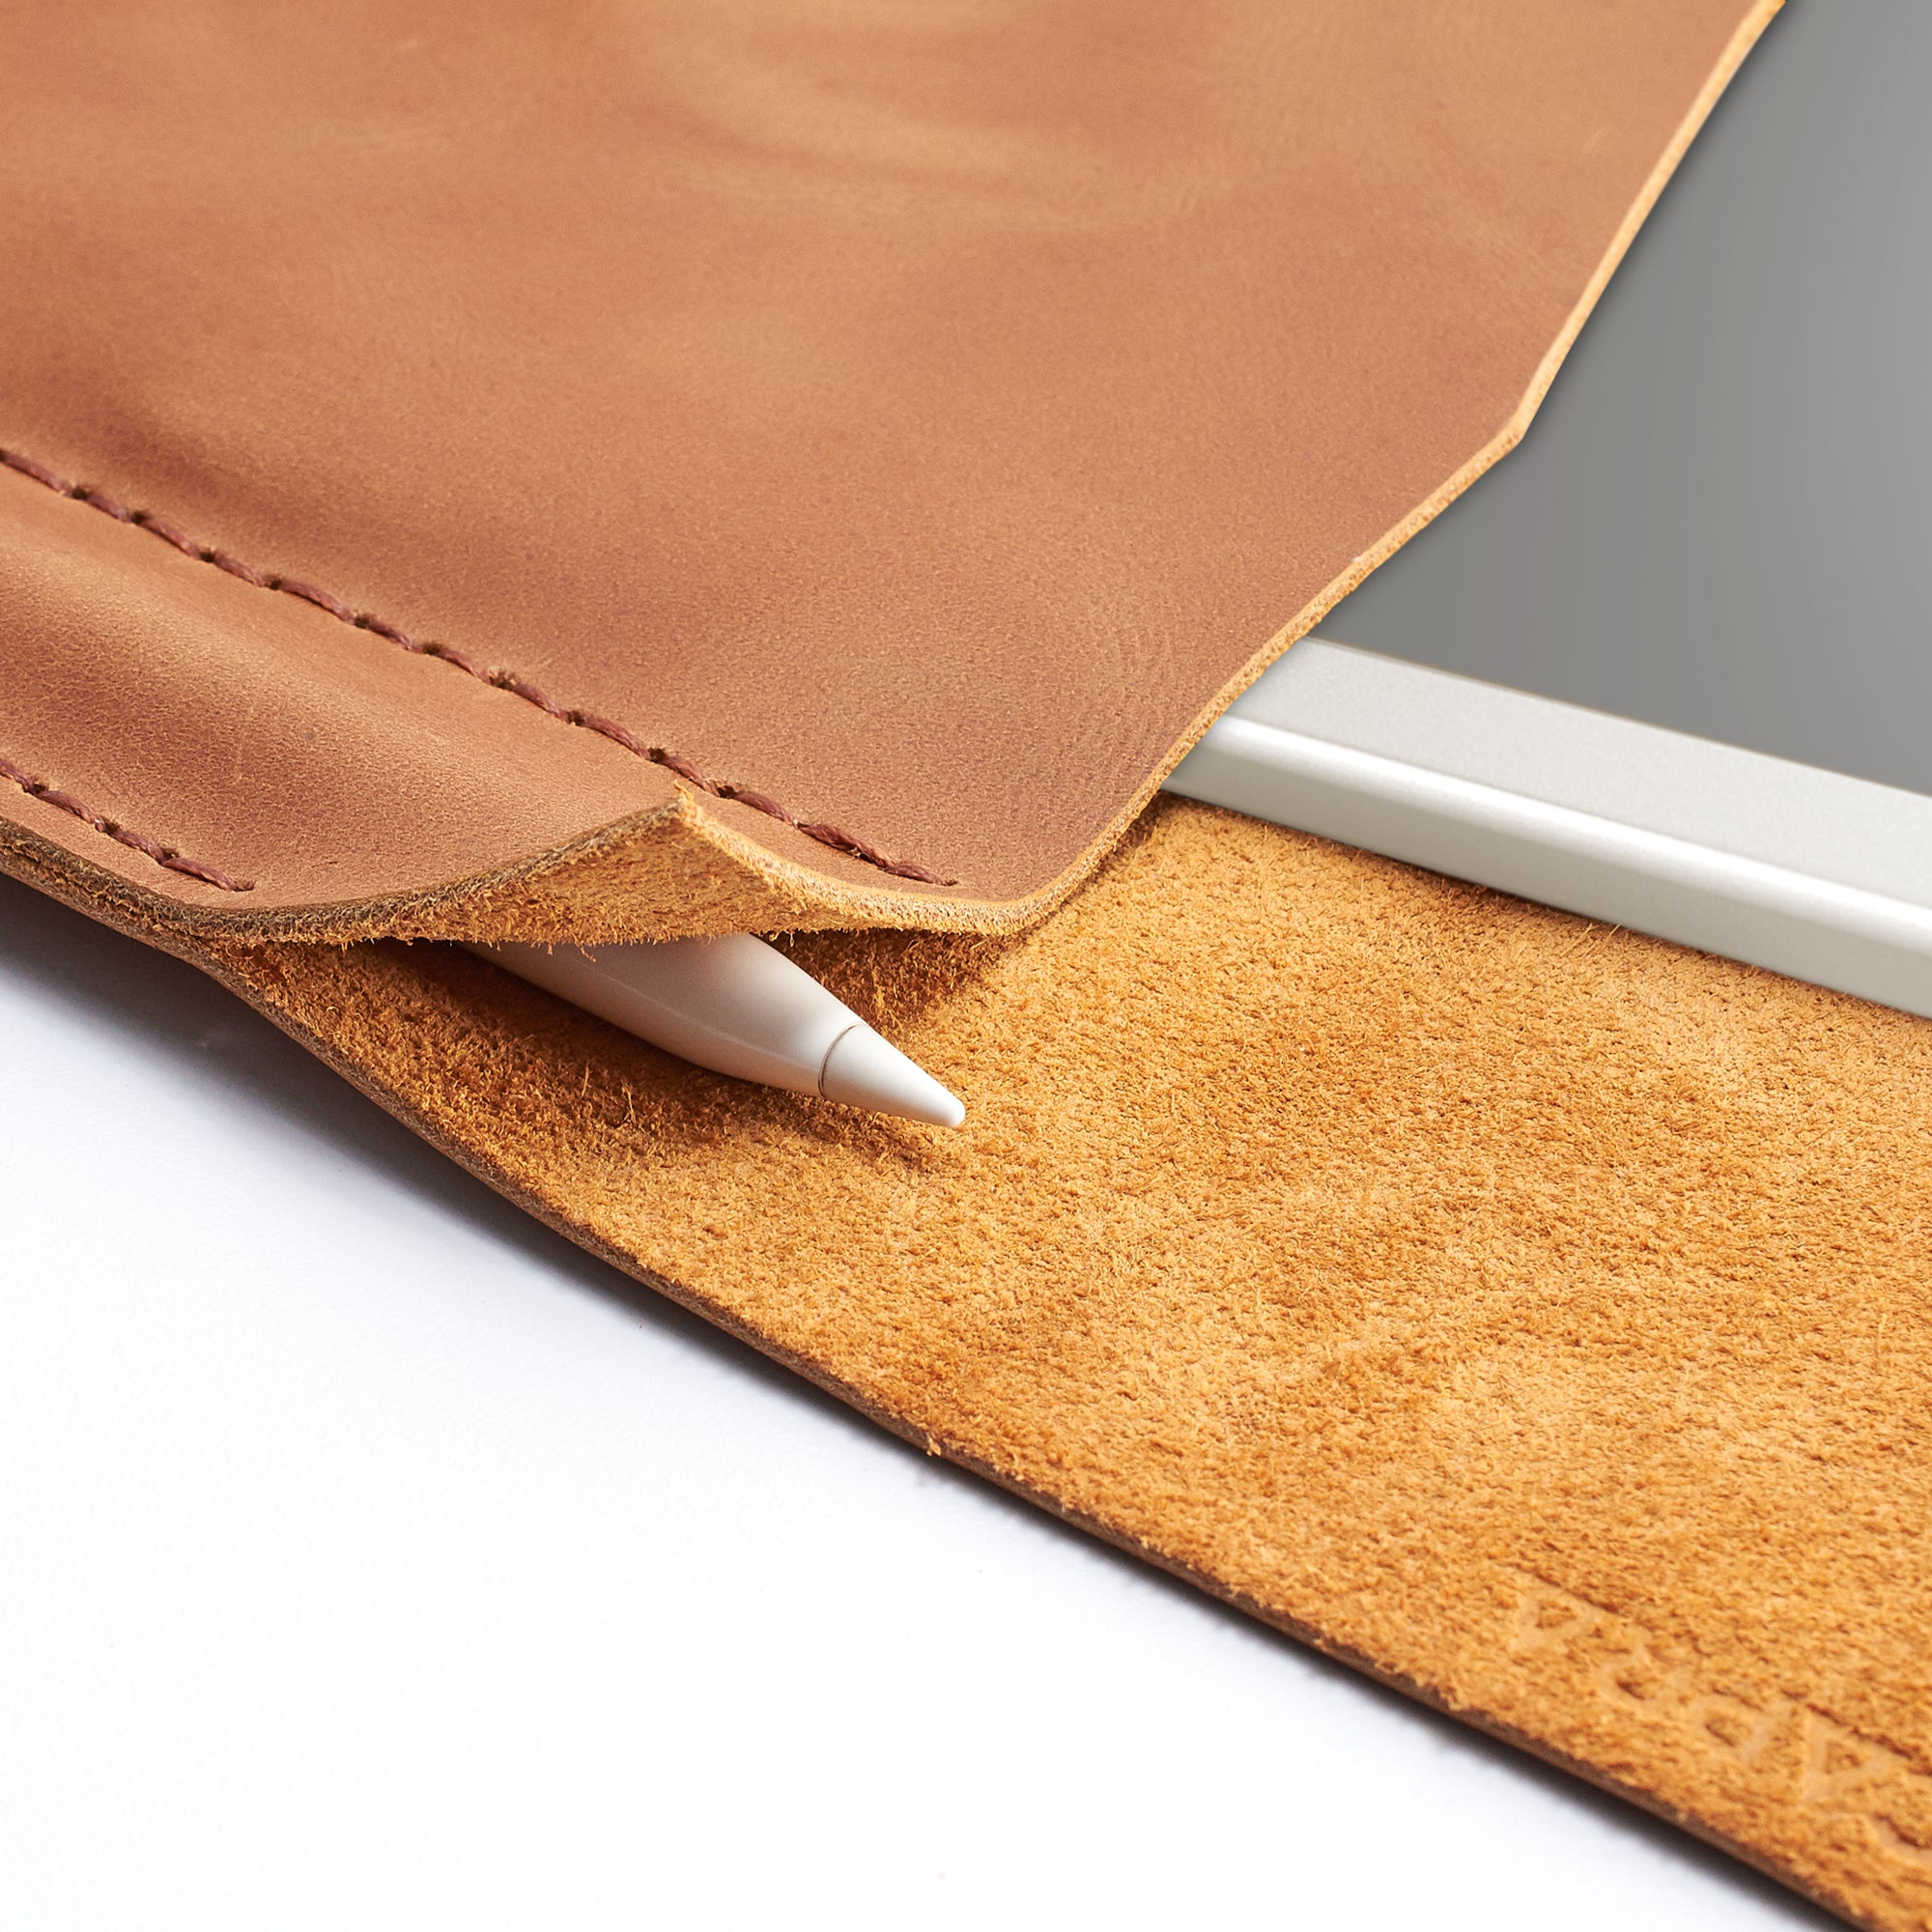 Marker holder. Light brown handcrafted leather reMarkable tablet case. Folio with Marker holder. Paper E-ink tablet minimalist sleeve design. 